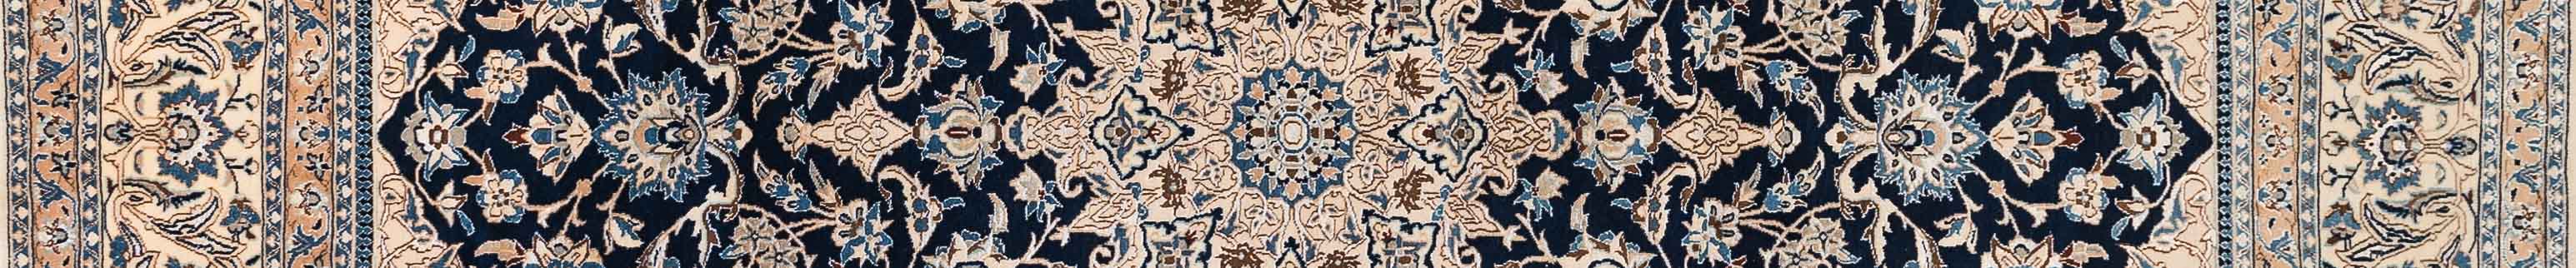 Nain Persian Carpet Rug N1Carpet Canada Montreal Tapis Persan 2750